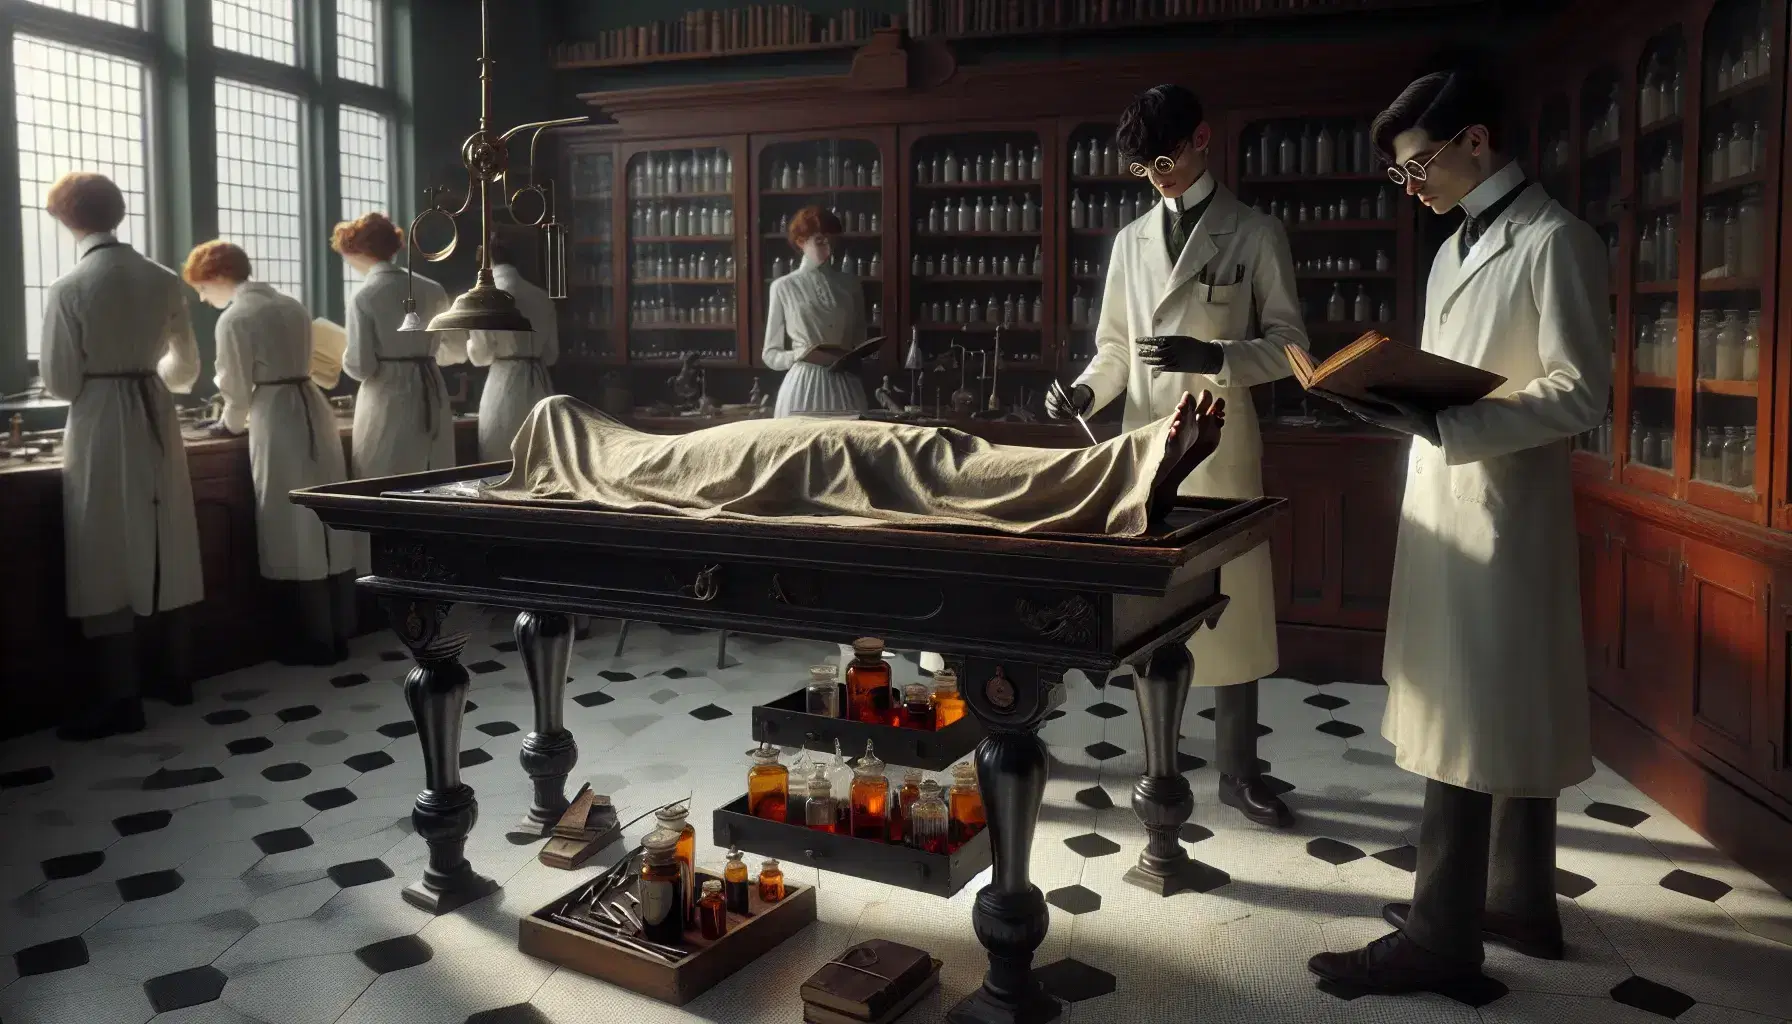 Escena de un laboratorio de disección de principios del siglo XX con dos estudiantes en batas blancas examinando un cadáver sobre una mesa de madera oscura, rodeados de estantes con frascos y herramientas quirúrgicas.